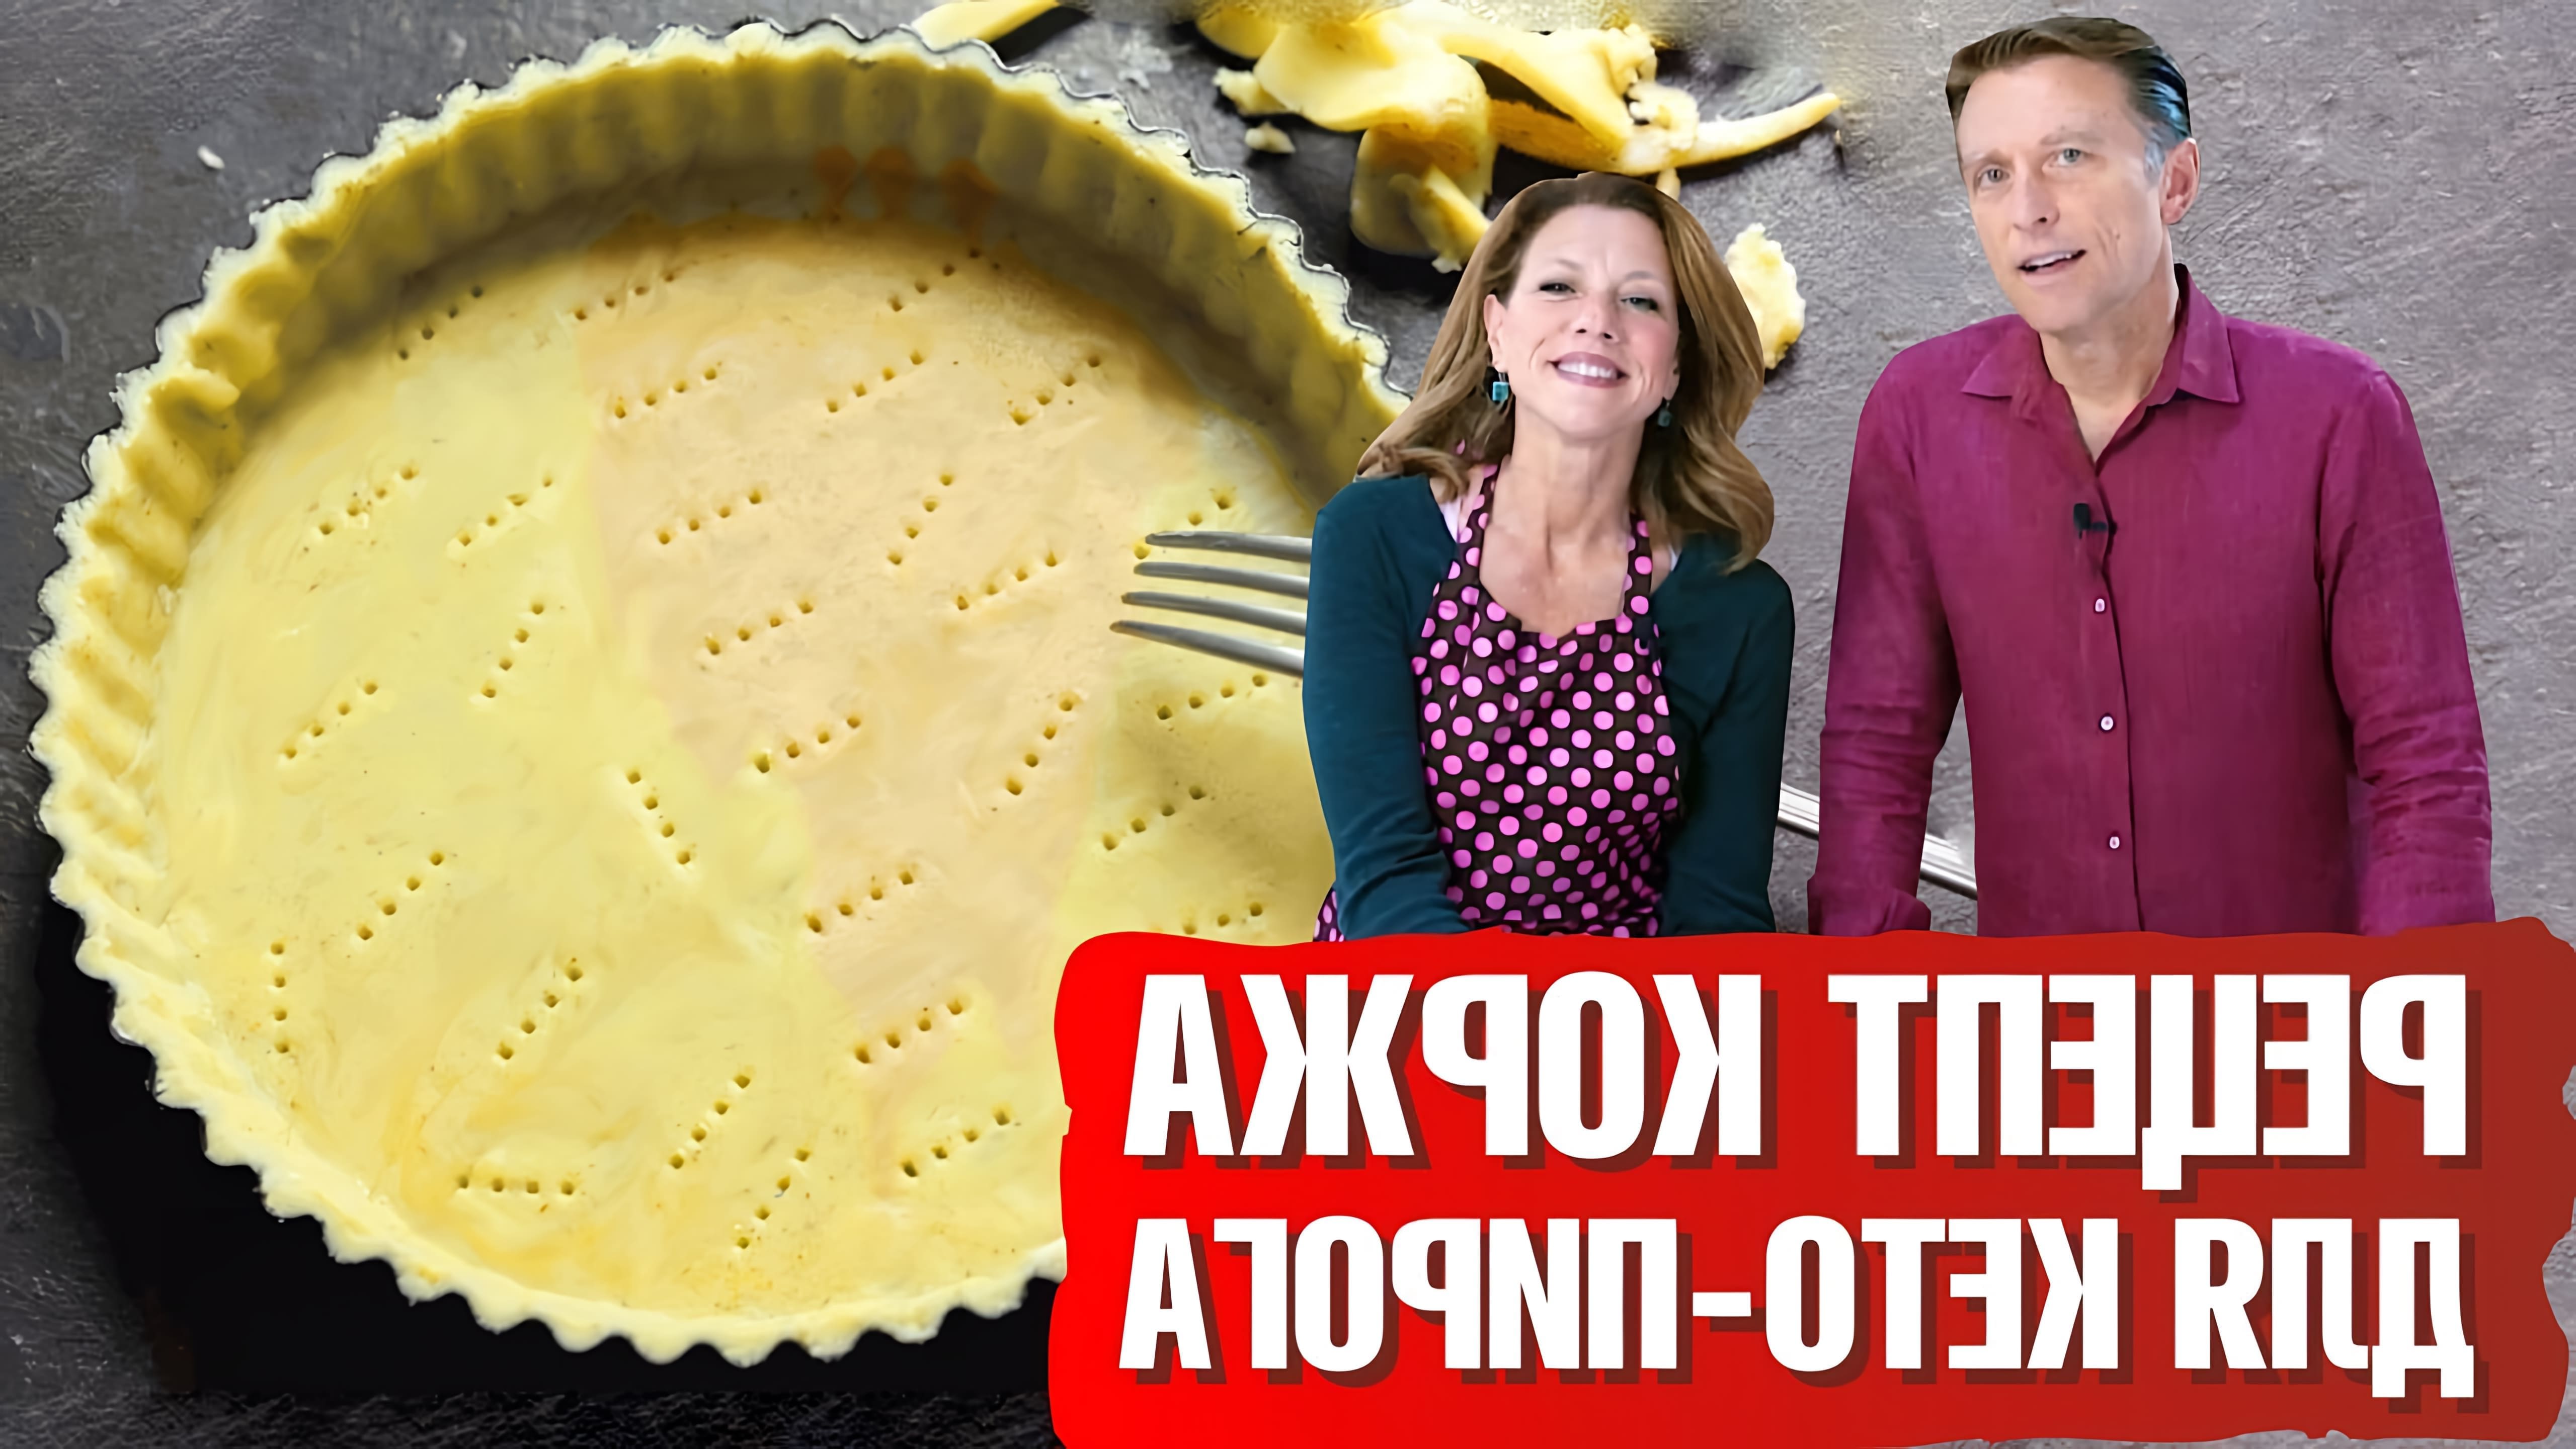 В этом видео демонстрируется рецепт кето пирога без глютена